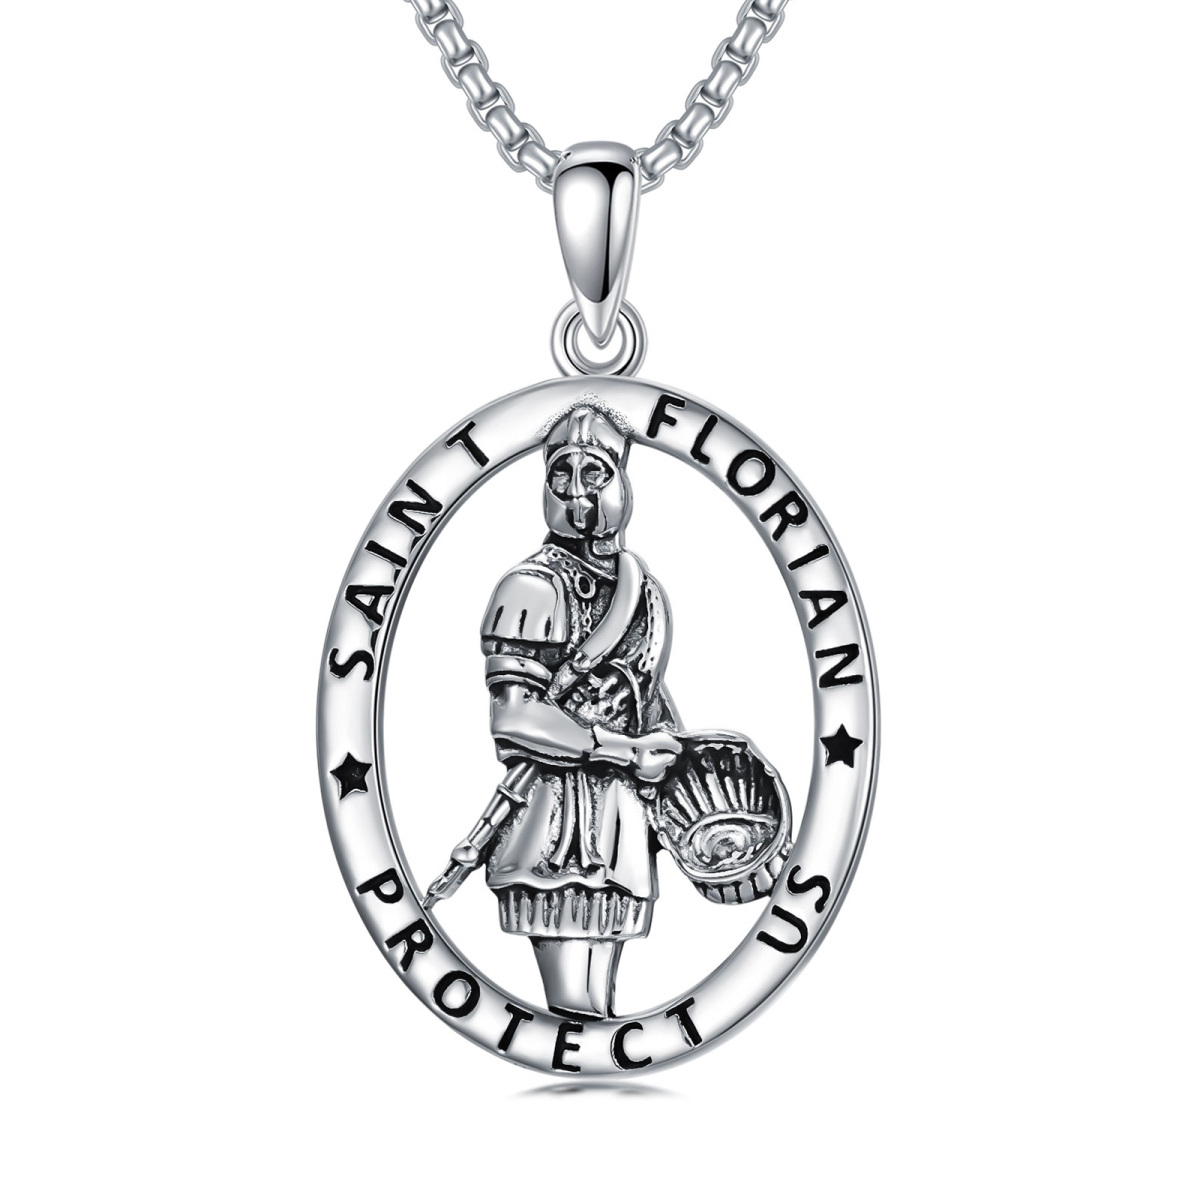 Sterling Silber Retro Sankt Florian Anhänger Halskette mit eingraviertem Wort-1